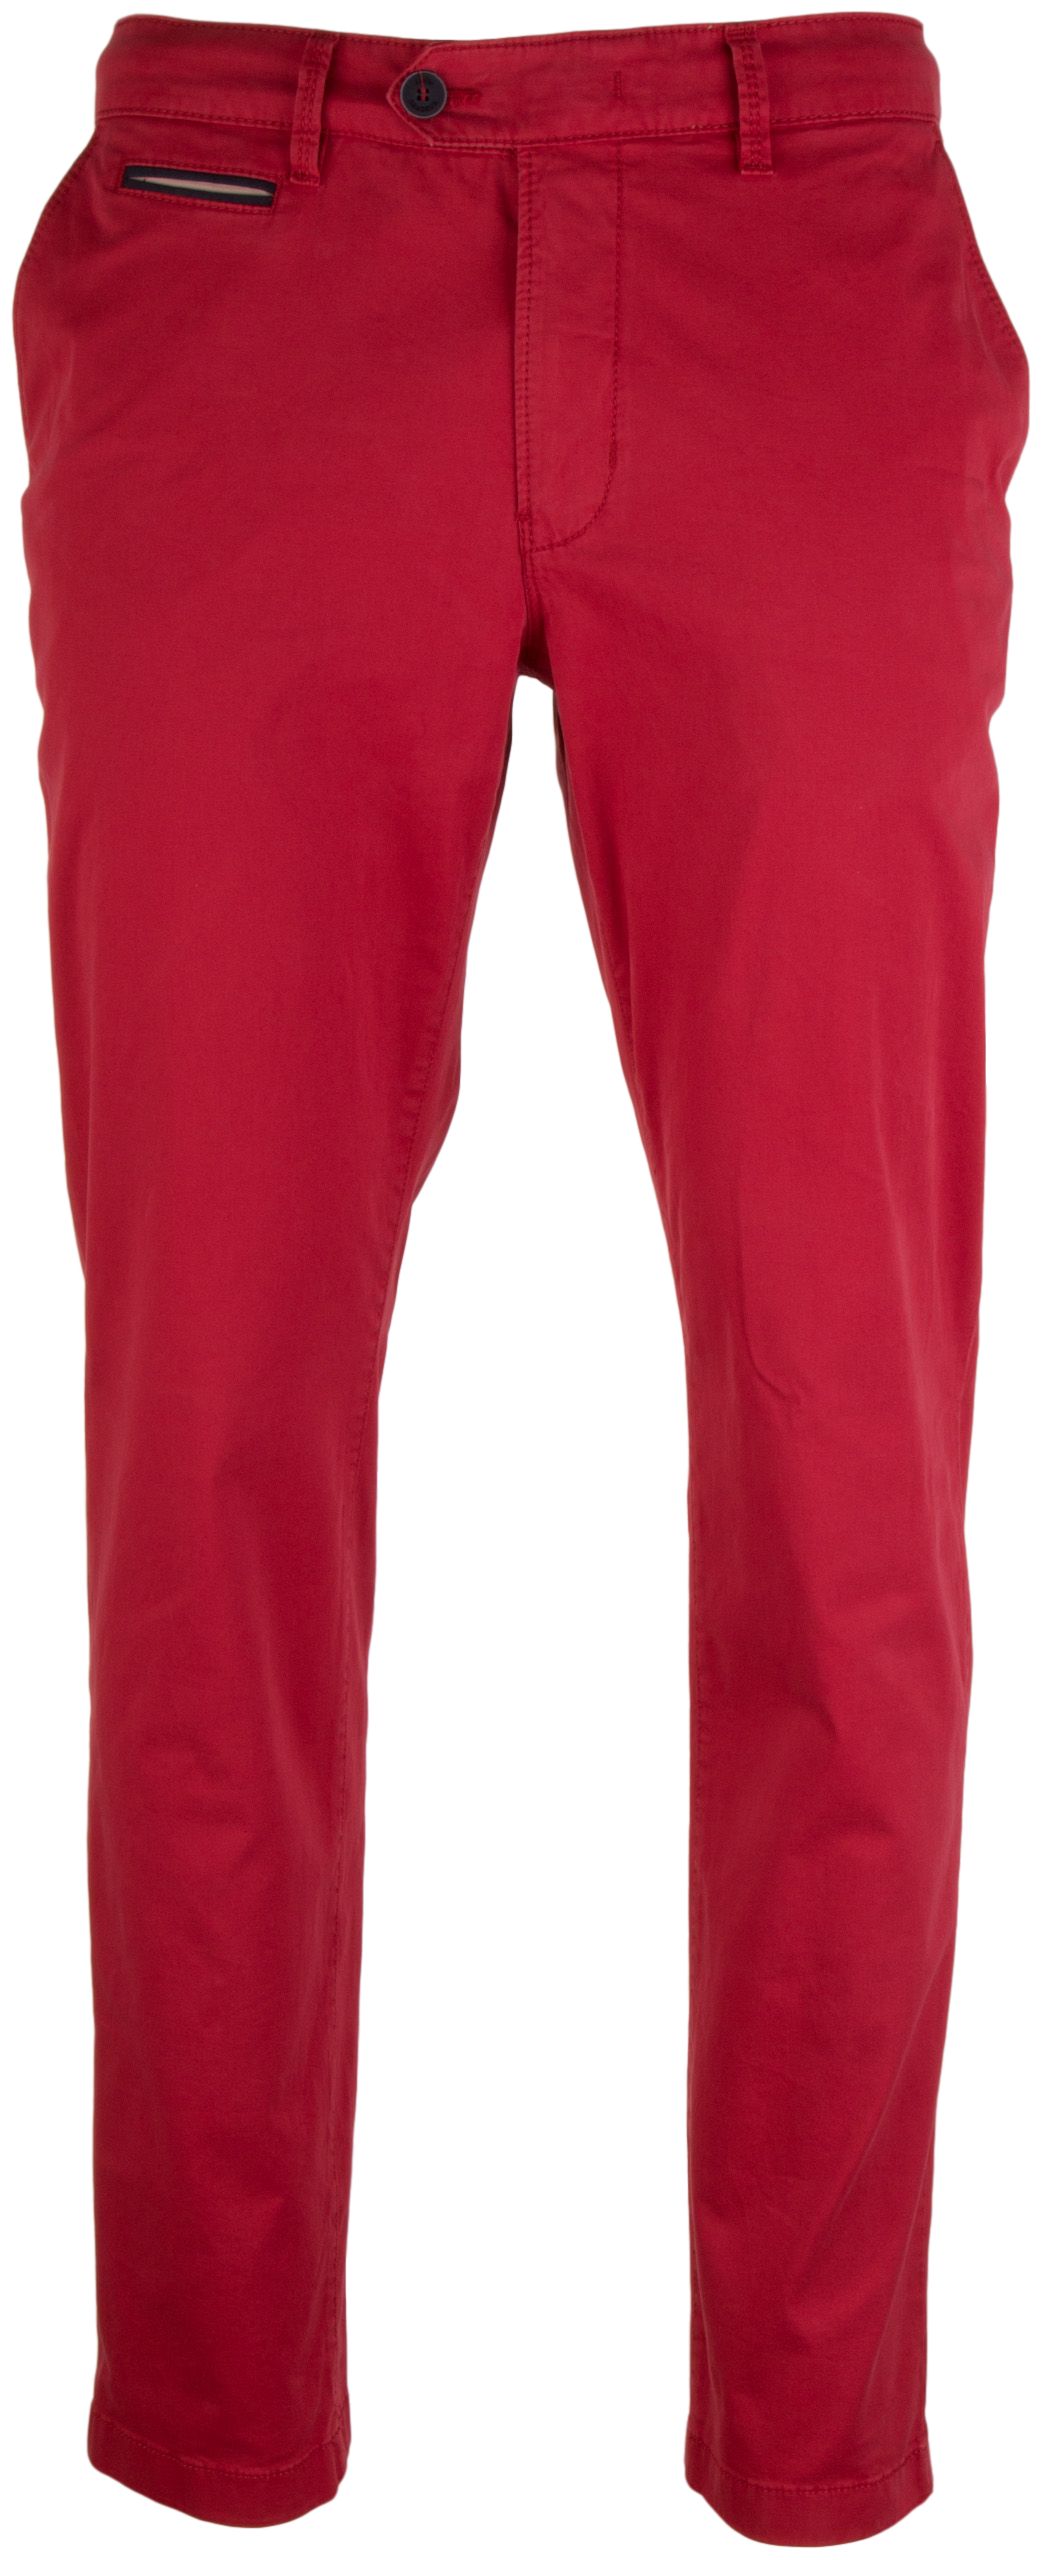 Gardeur Benny-3 Cotton Uni Pants Red | Jan Rozing Men's Fashion